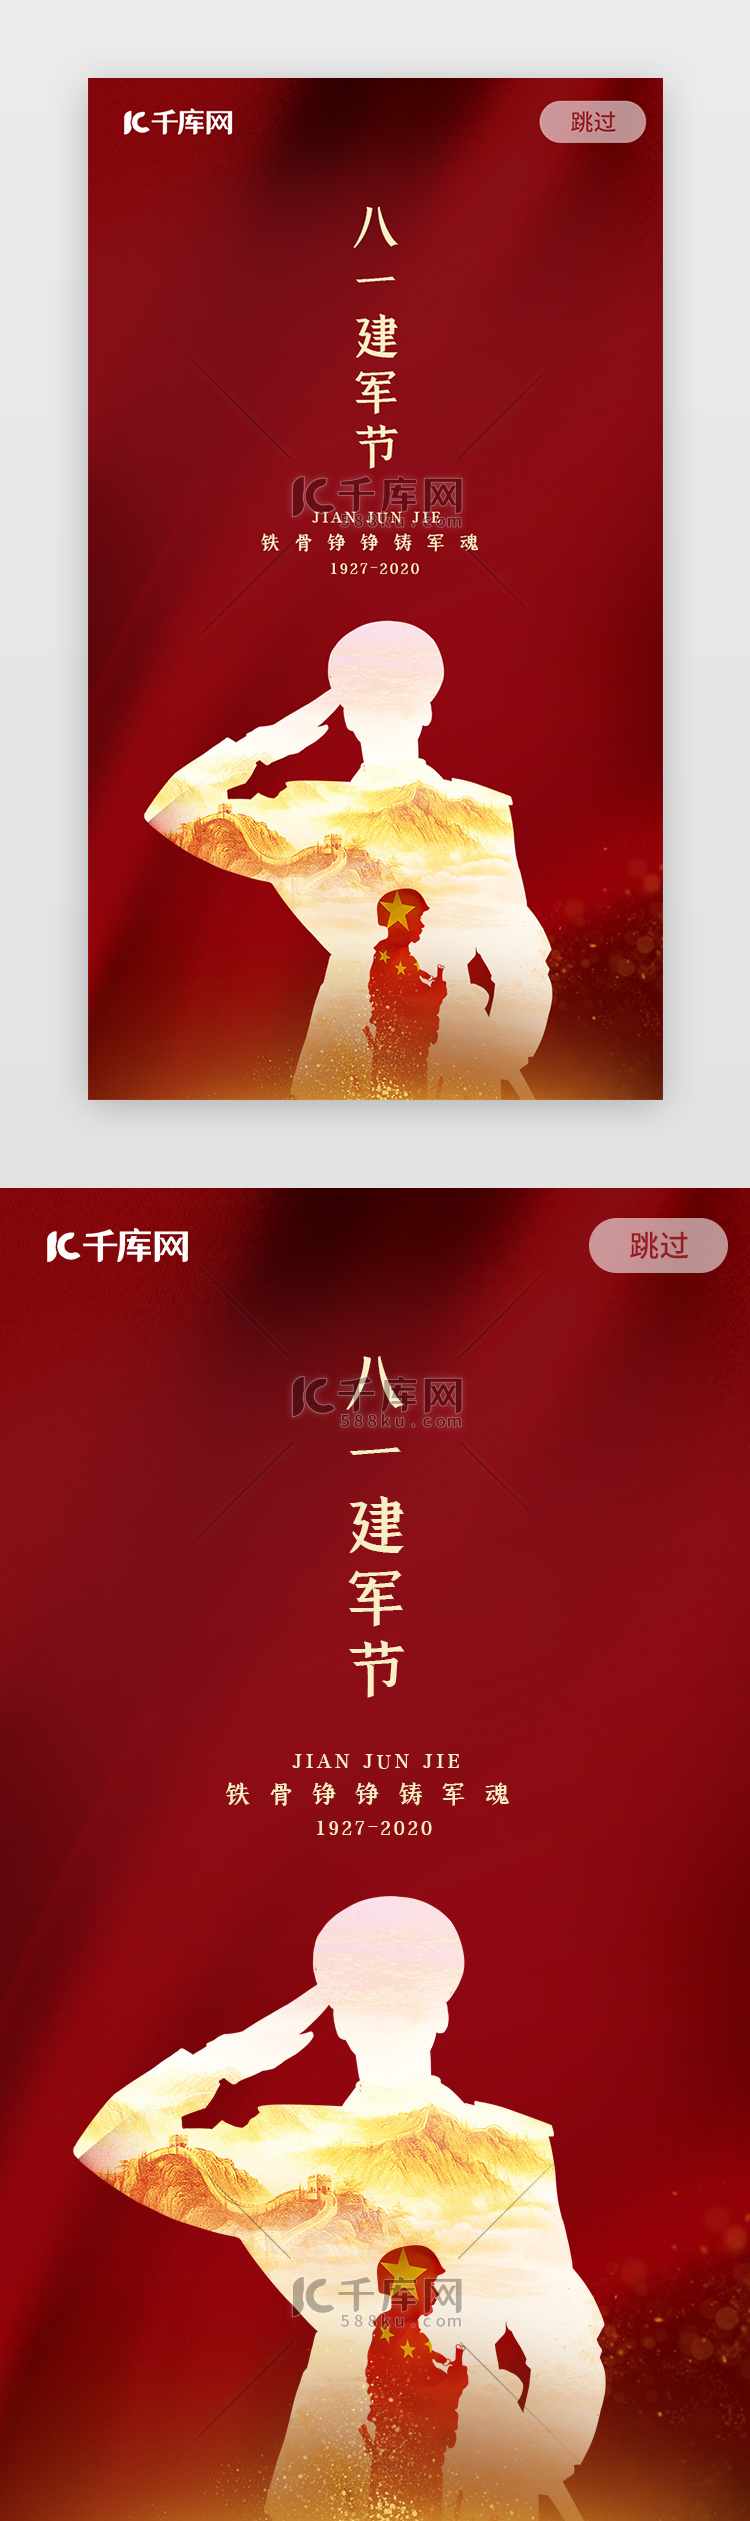 简约红色中国传统节日大气建军节闪屏启动页